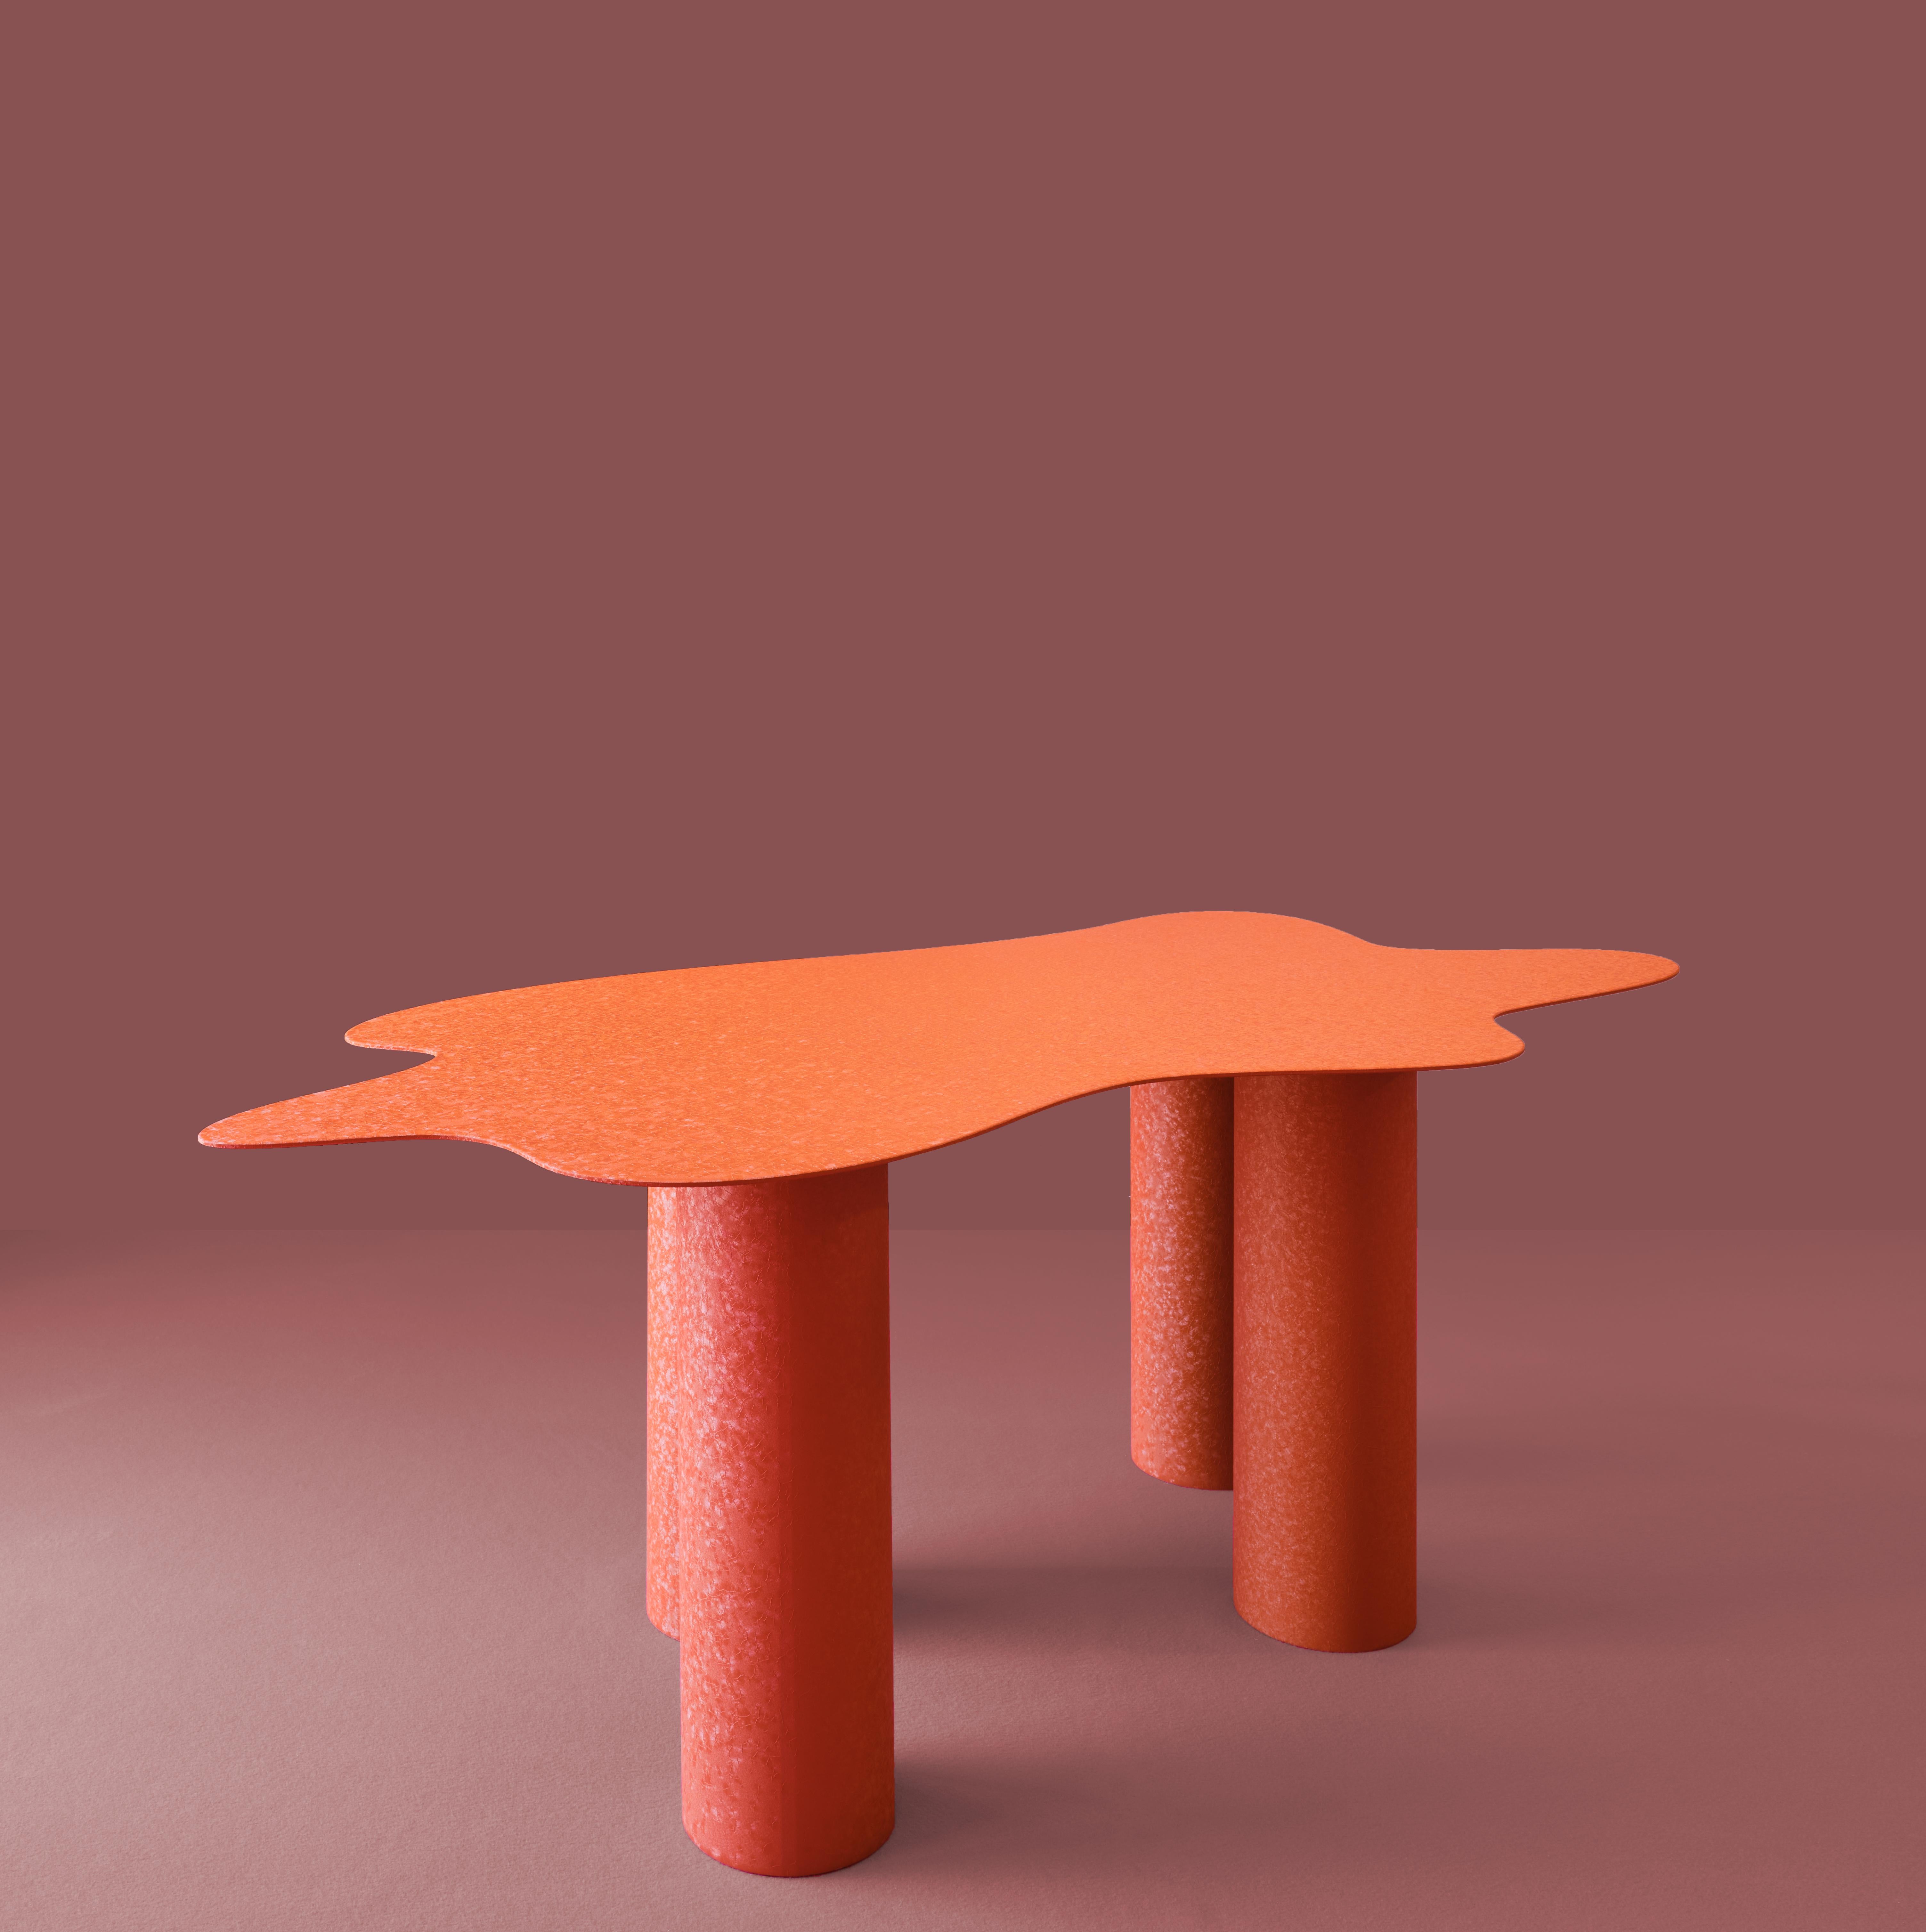 Der Tisch Onda arbeitet mit der Gegenüberstellung von Volumen und Verarbeitung.

Eine gewellte, organische, extradünne Platte auf architektonischen, klobigen, zylindrischen Beinen. Wie ein Blatt Papier liegt die Platte sanft auf den übergroßen